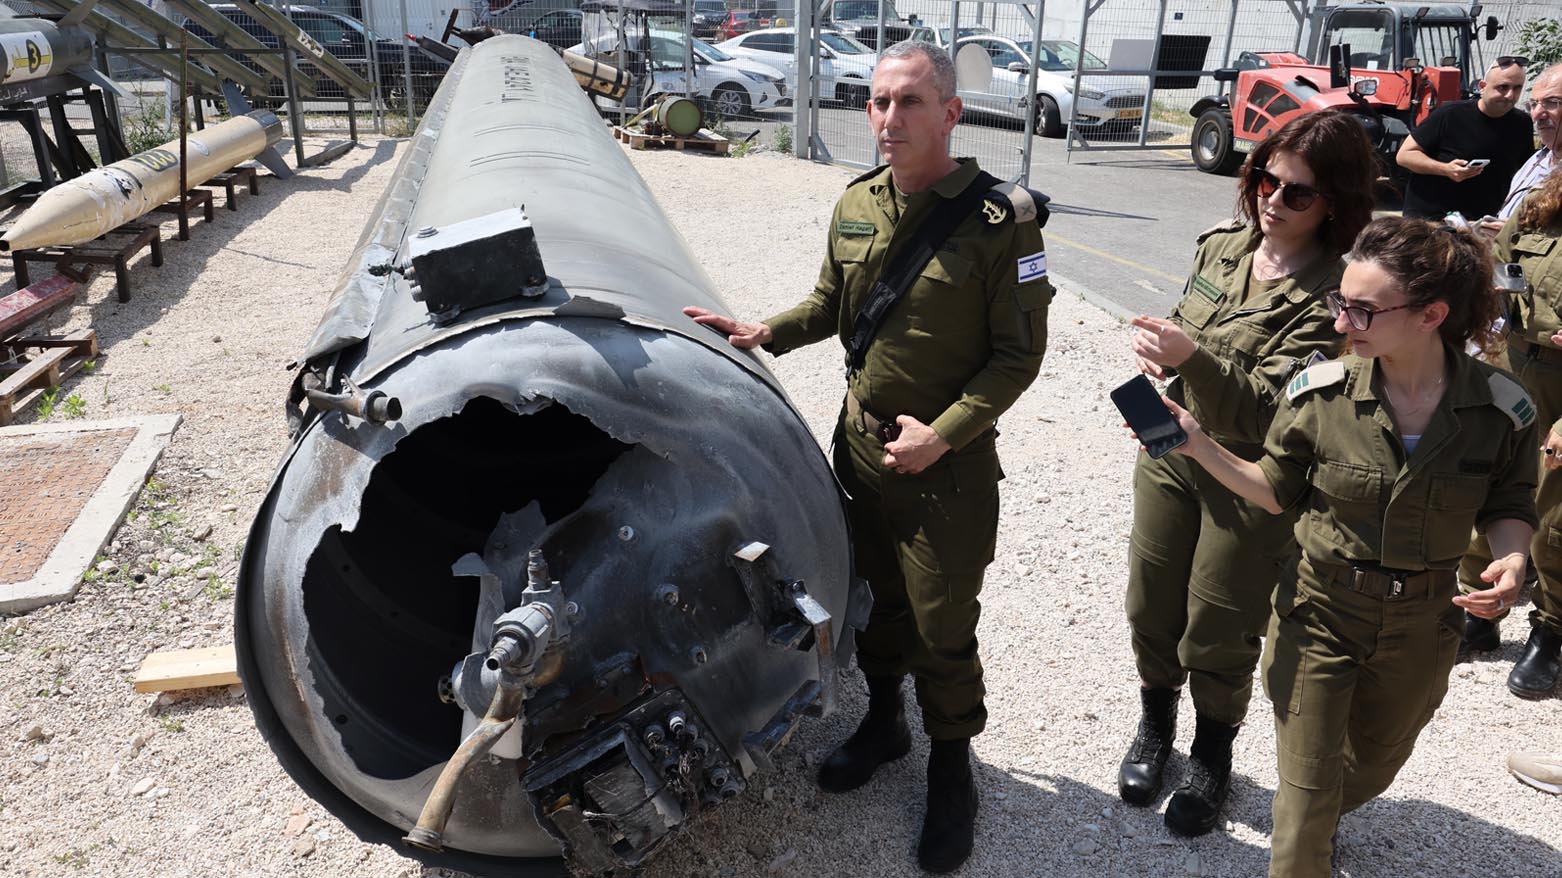 دریاسالار دانیال هاگاری، سخنگوی ارتش اسرائیل، در پایگاه نظامی جولیس در جنوب اسرائیل در کنار یک موشک بالستیک ایرانی که در آخر هفته در اسرائیل سقوط کرد. عکس: ای اف پی